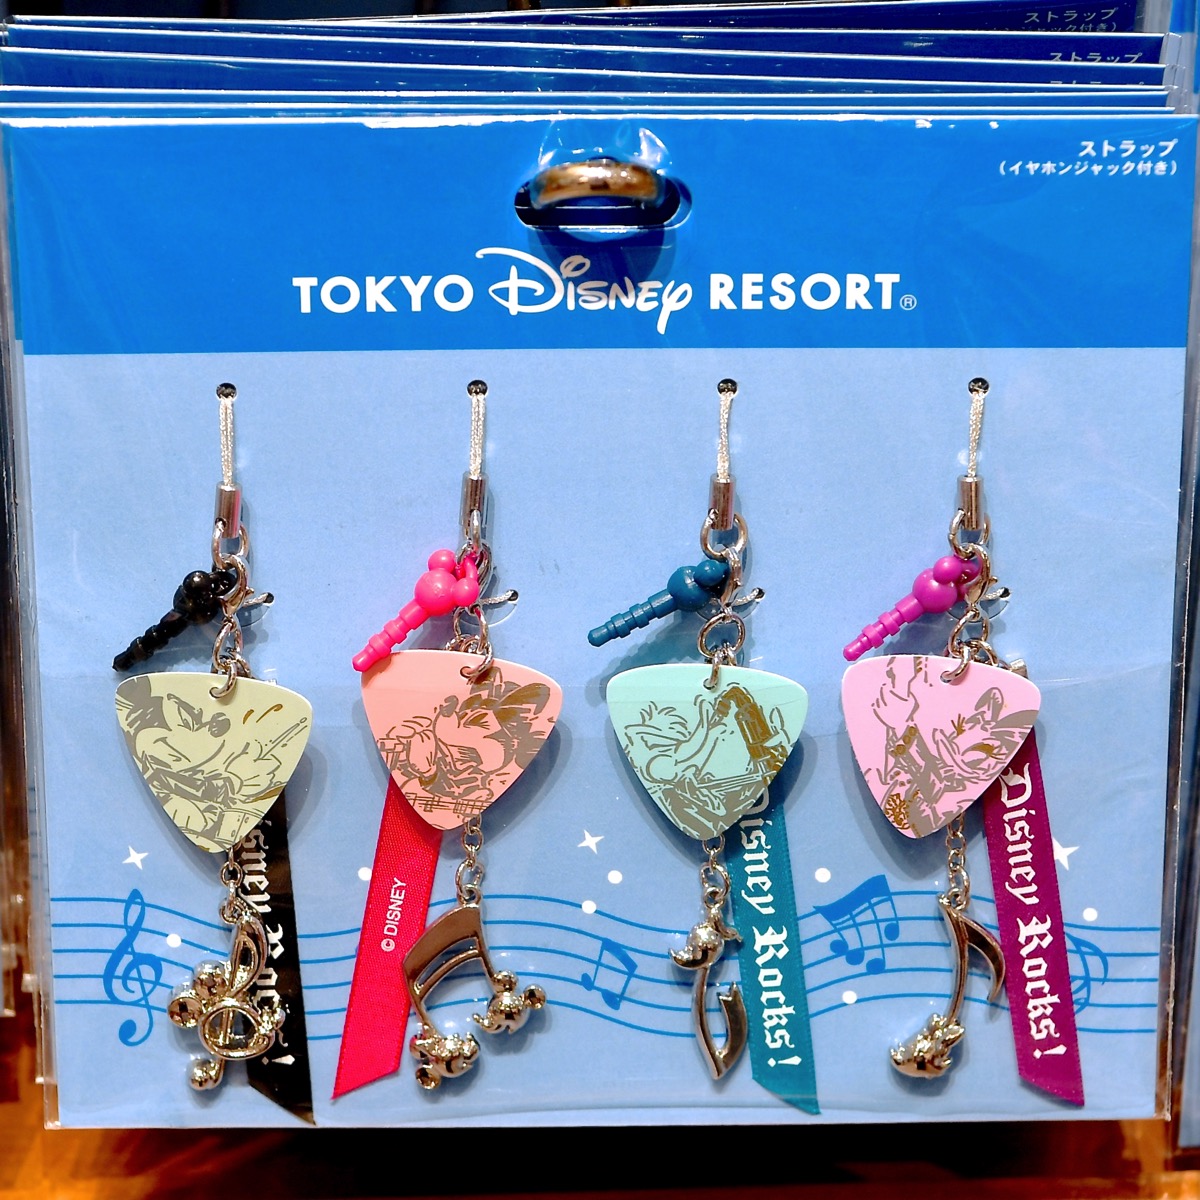 Tokyo Disney Resort ギターピック 東京ディズニーリゾートオリジナル 限定品 好評受付中